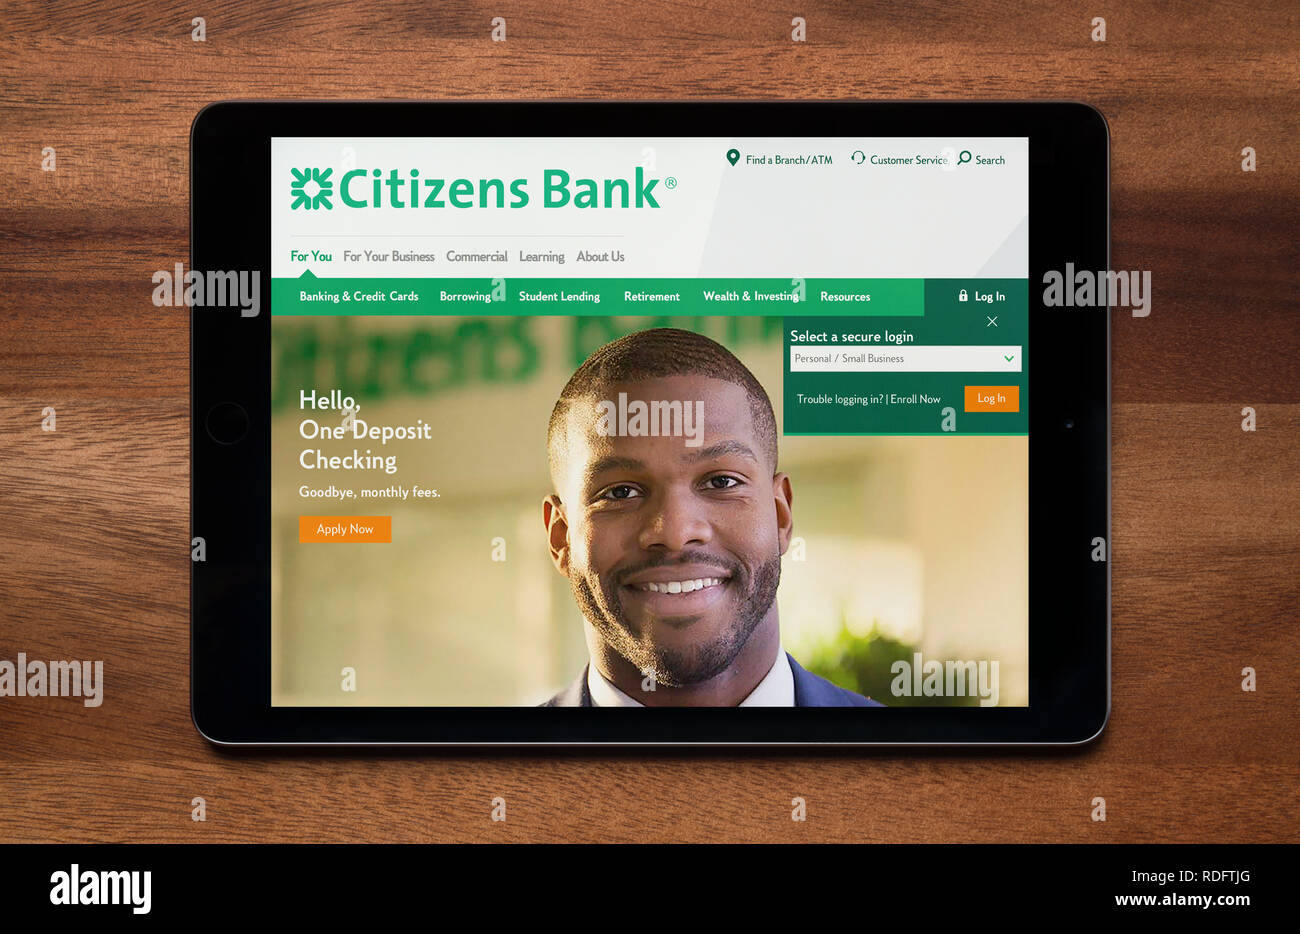 El sitio web de Citizens Bank es visto en un iPad, que descansa sobre una mesa de madera (uso Editorial solamente). Foto de stock